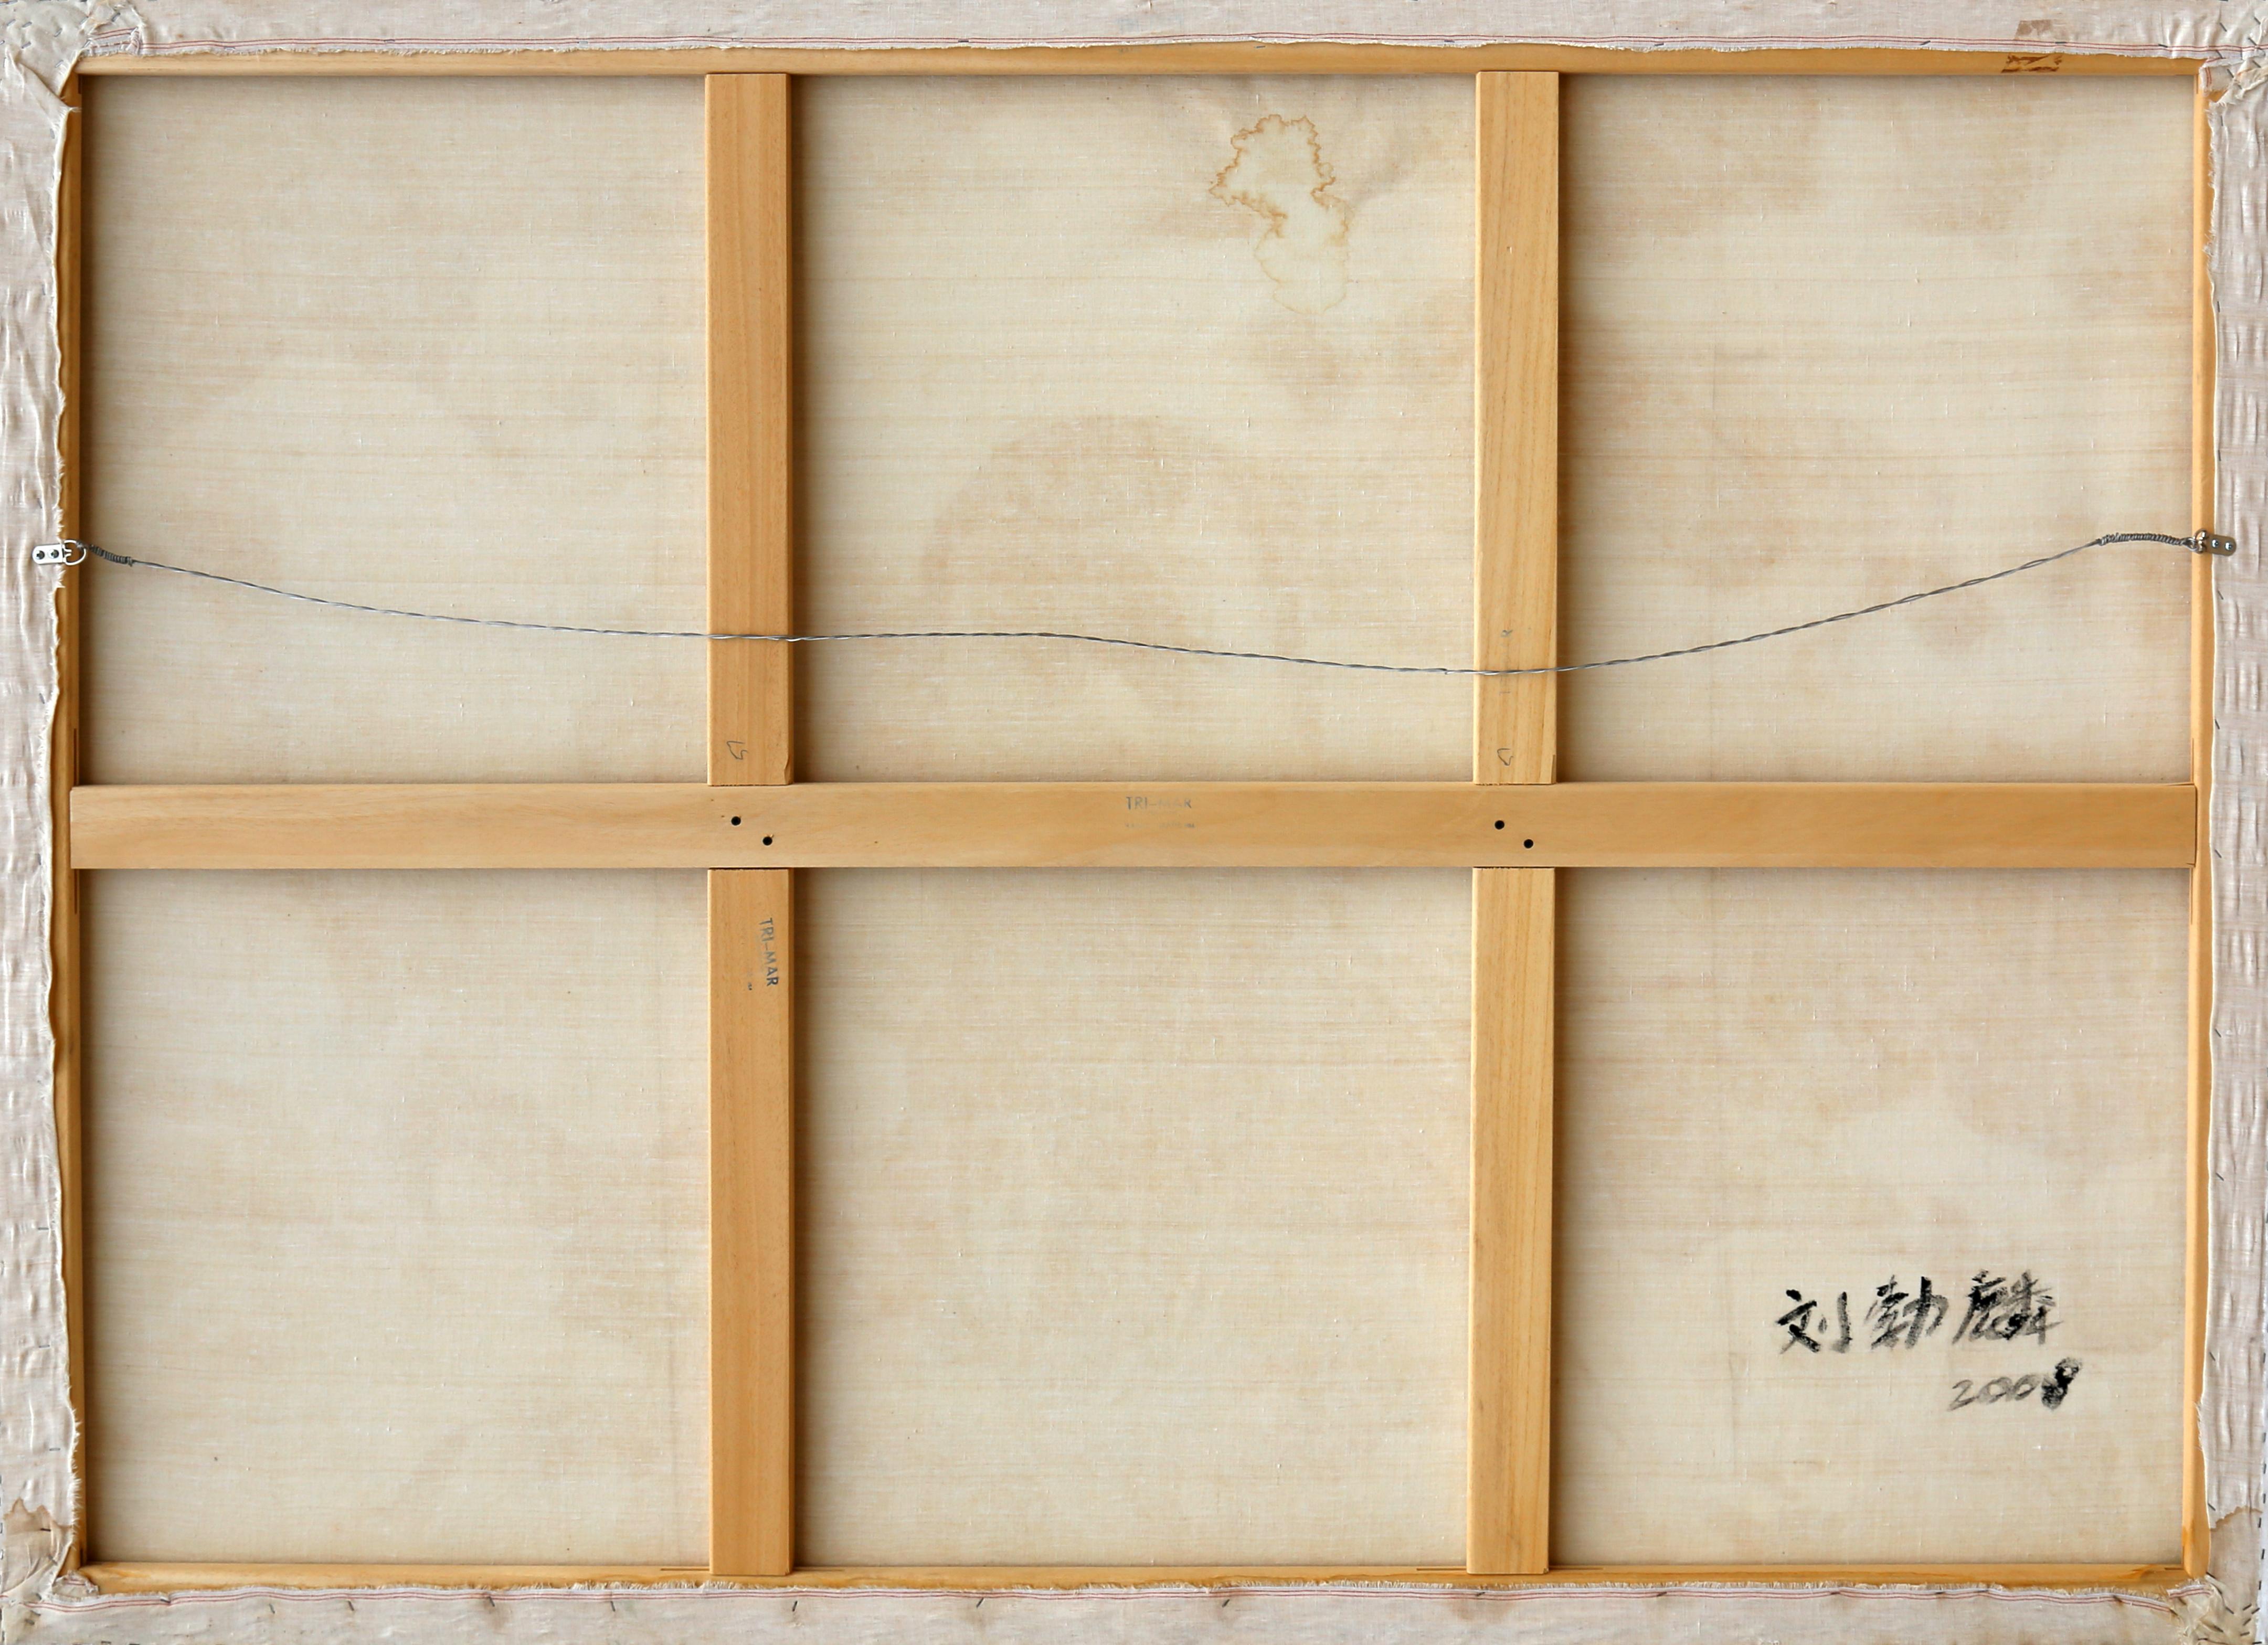 Chinesischer Bericht #2 von Liu Bolin, Chinesisch (1973)
Datum: 2008
Inkjet und Öl auf Leinwand, verso signiert und datiert
Größe: 57 x 78,25 in. (144,78 x 198,76 cm)